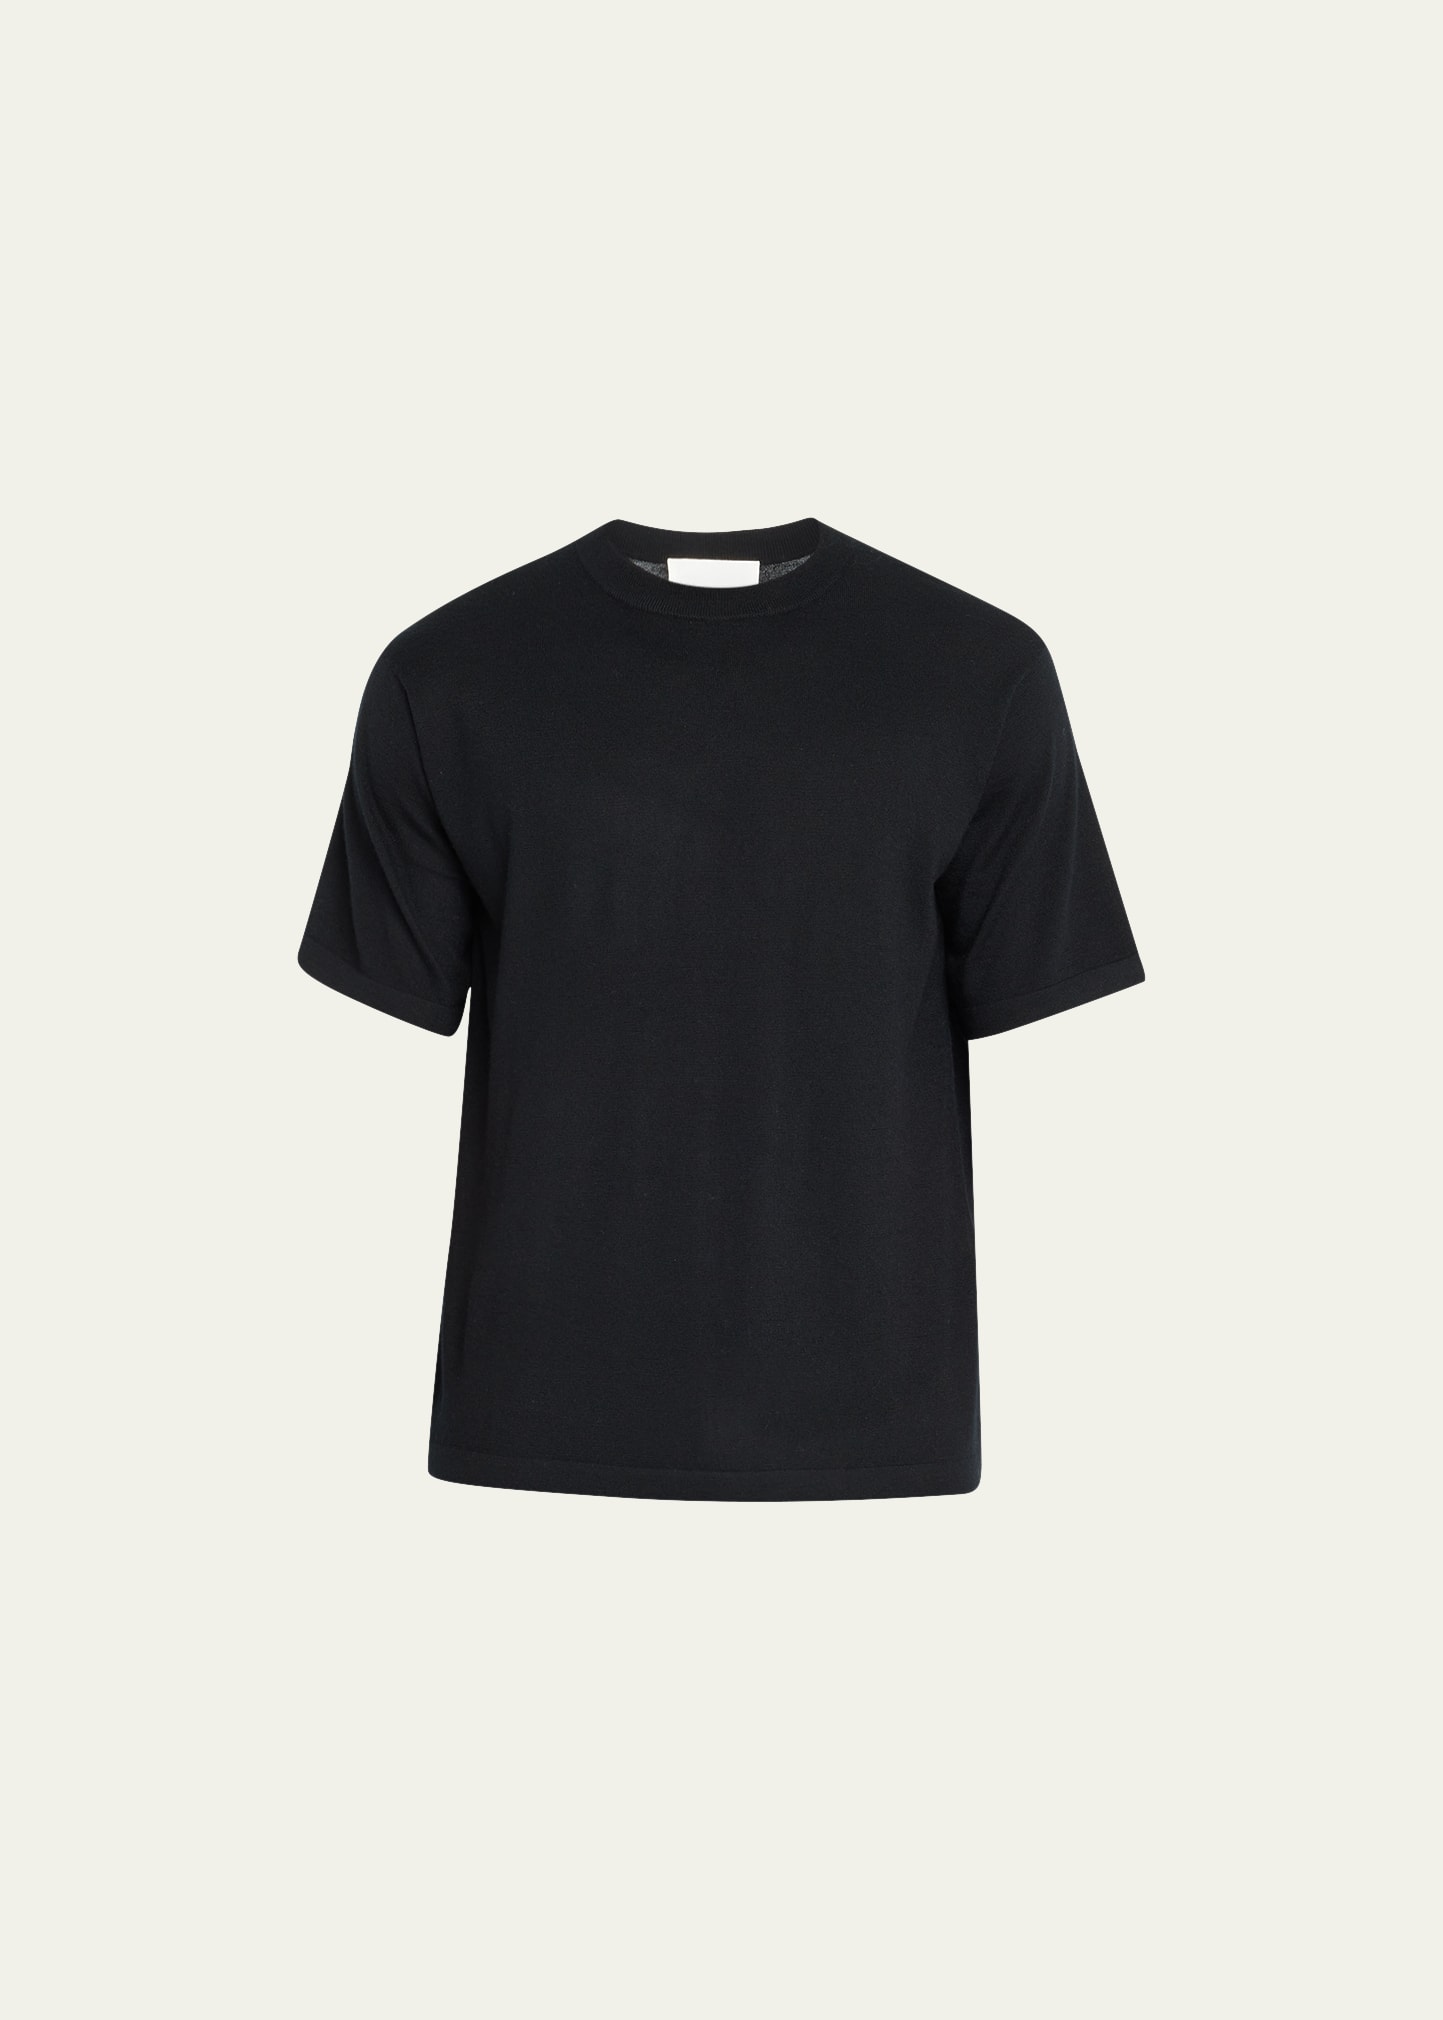 Lisa Yang Black Ancell T-shirt In Bl Black